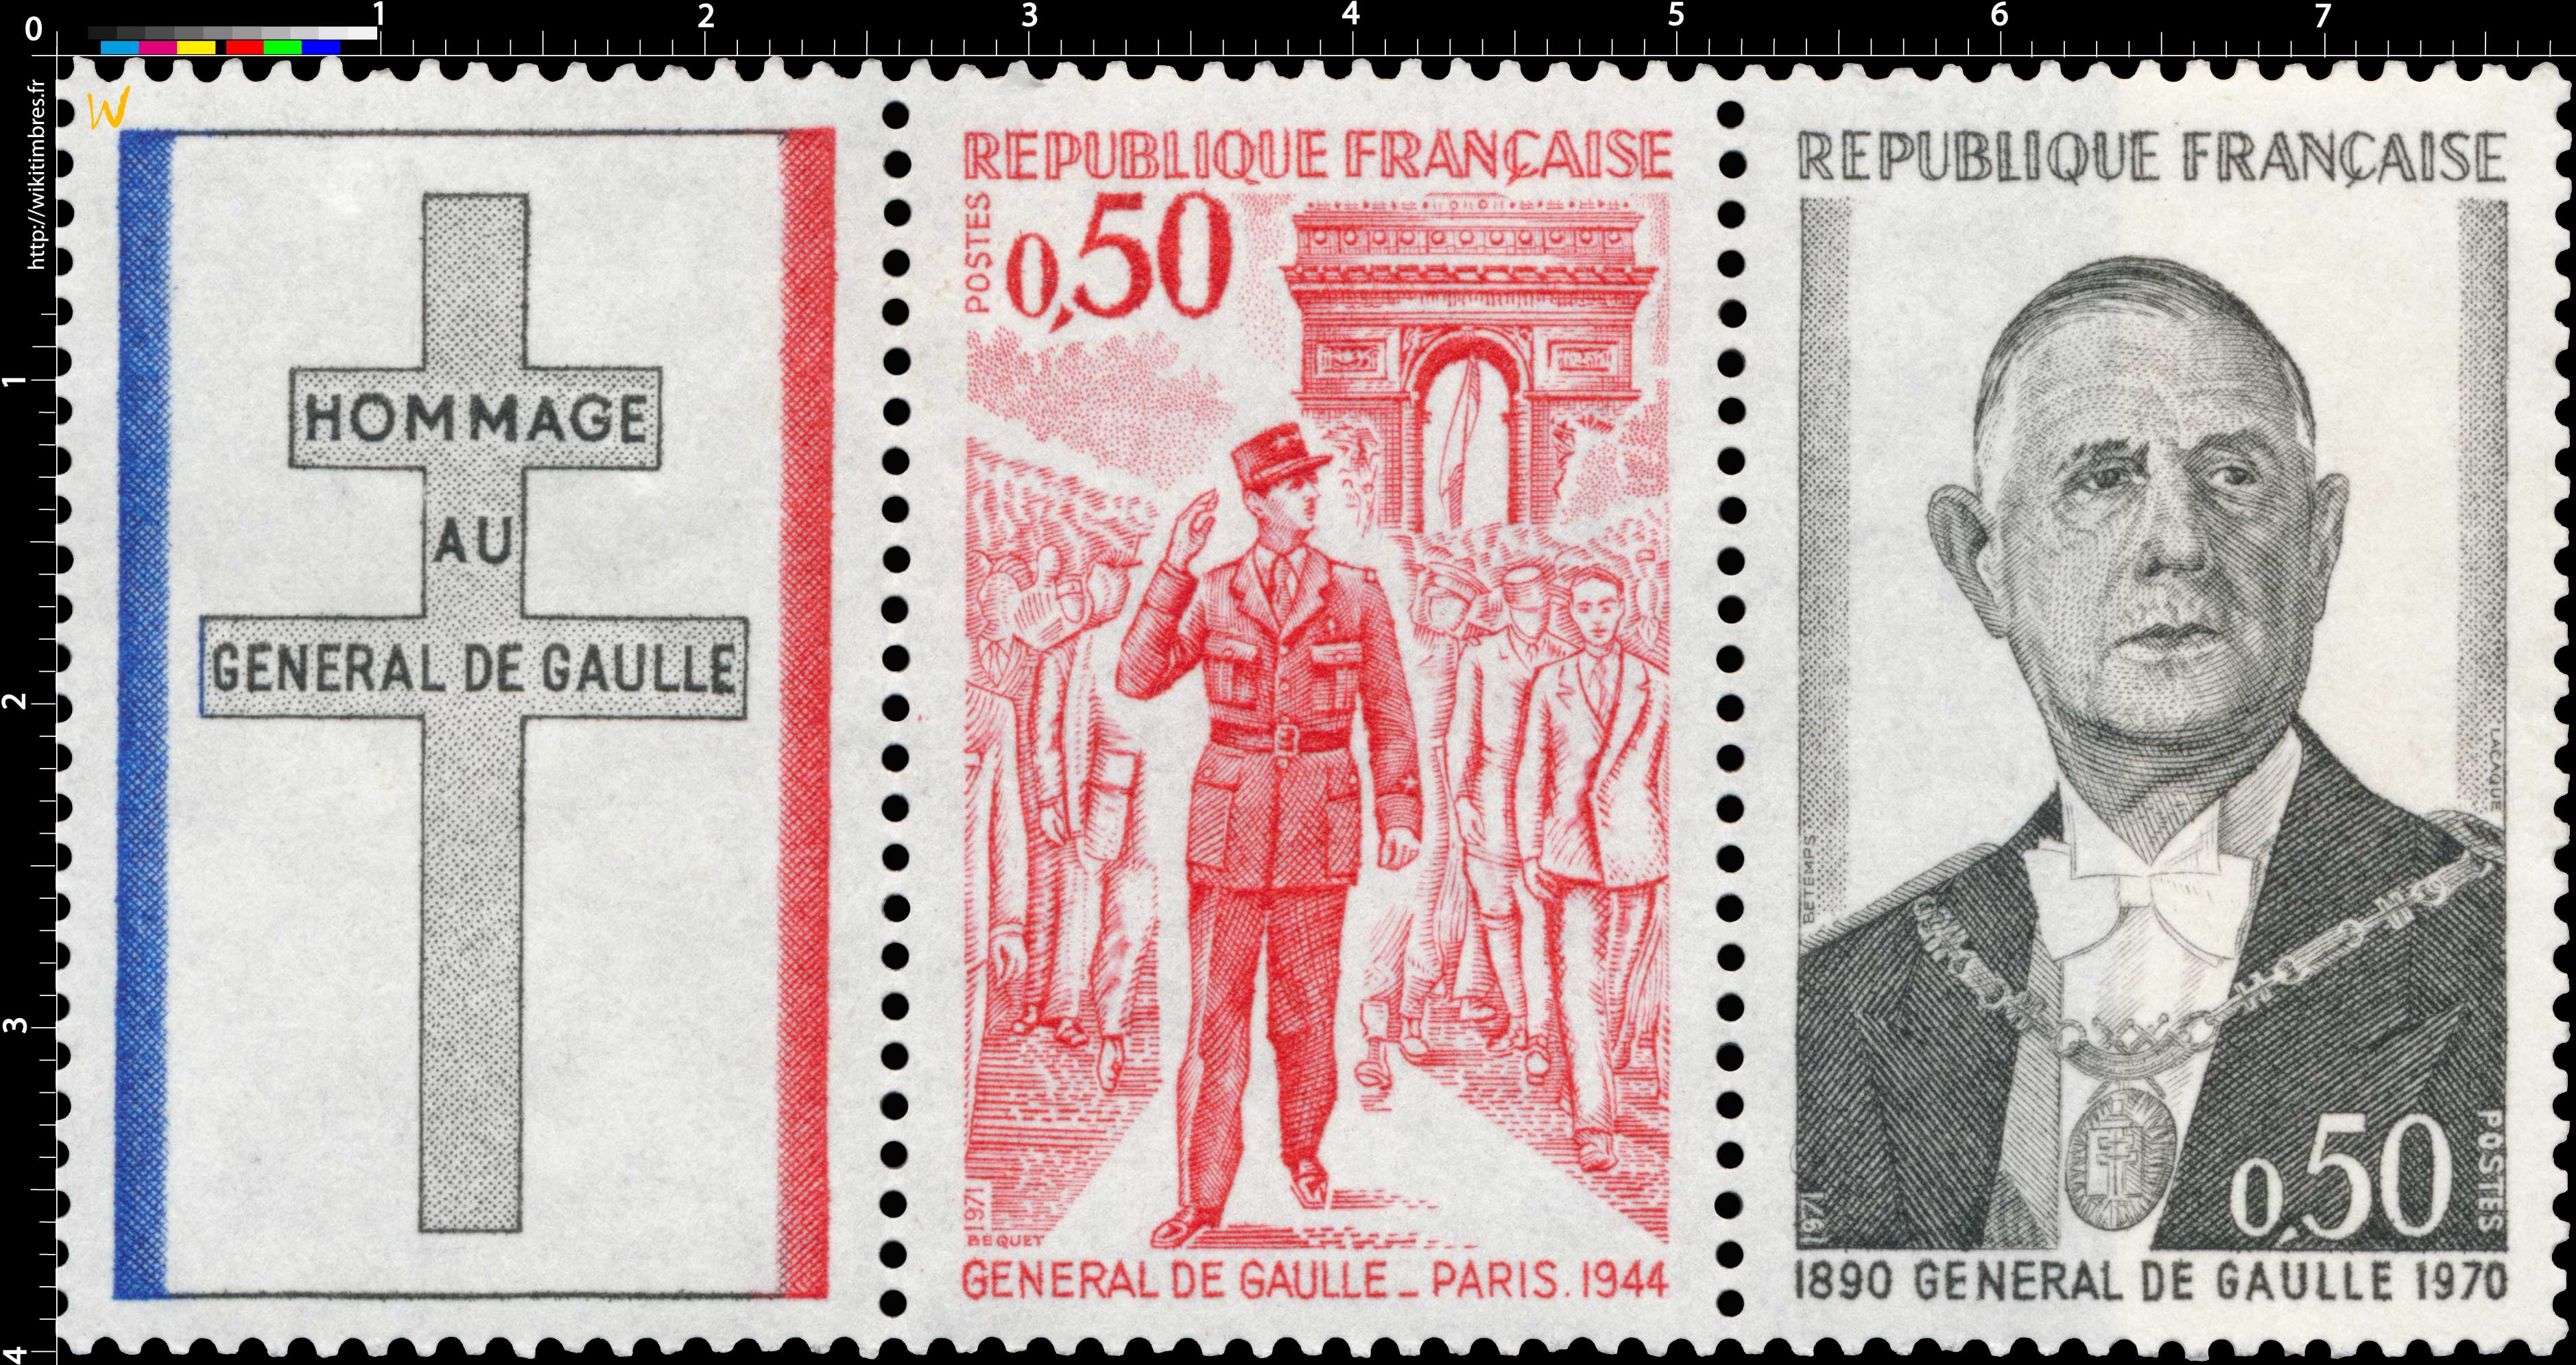 1971 GÉNÉRAL DE GAULLE - JUIN 1940